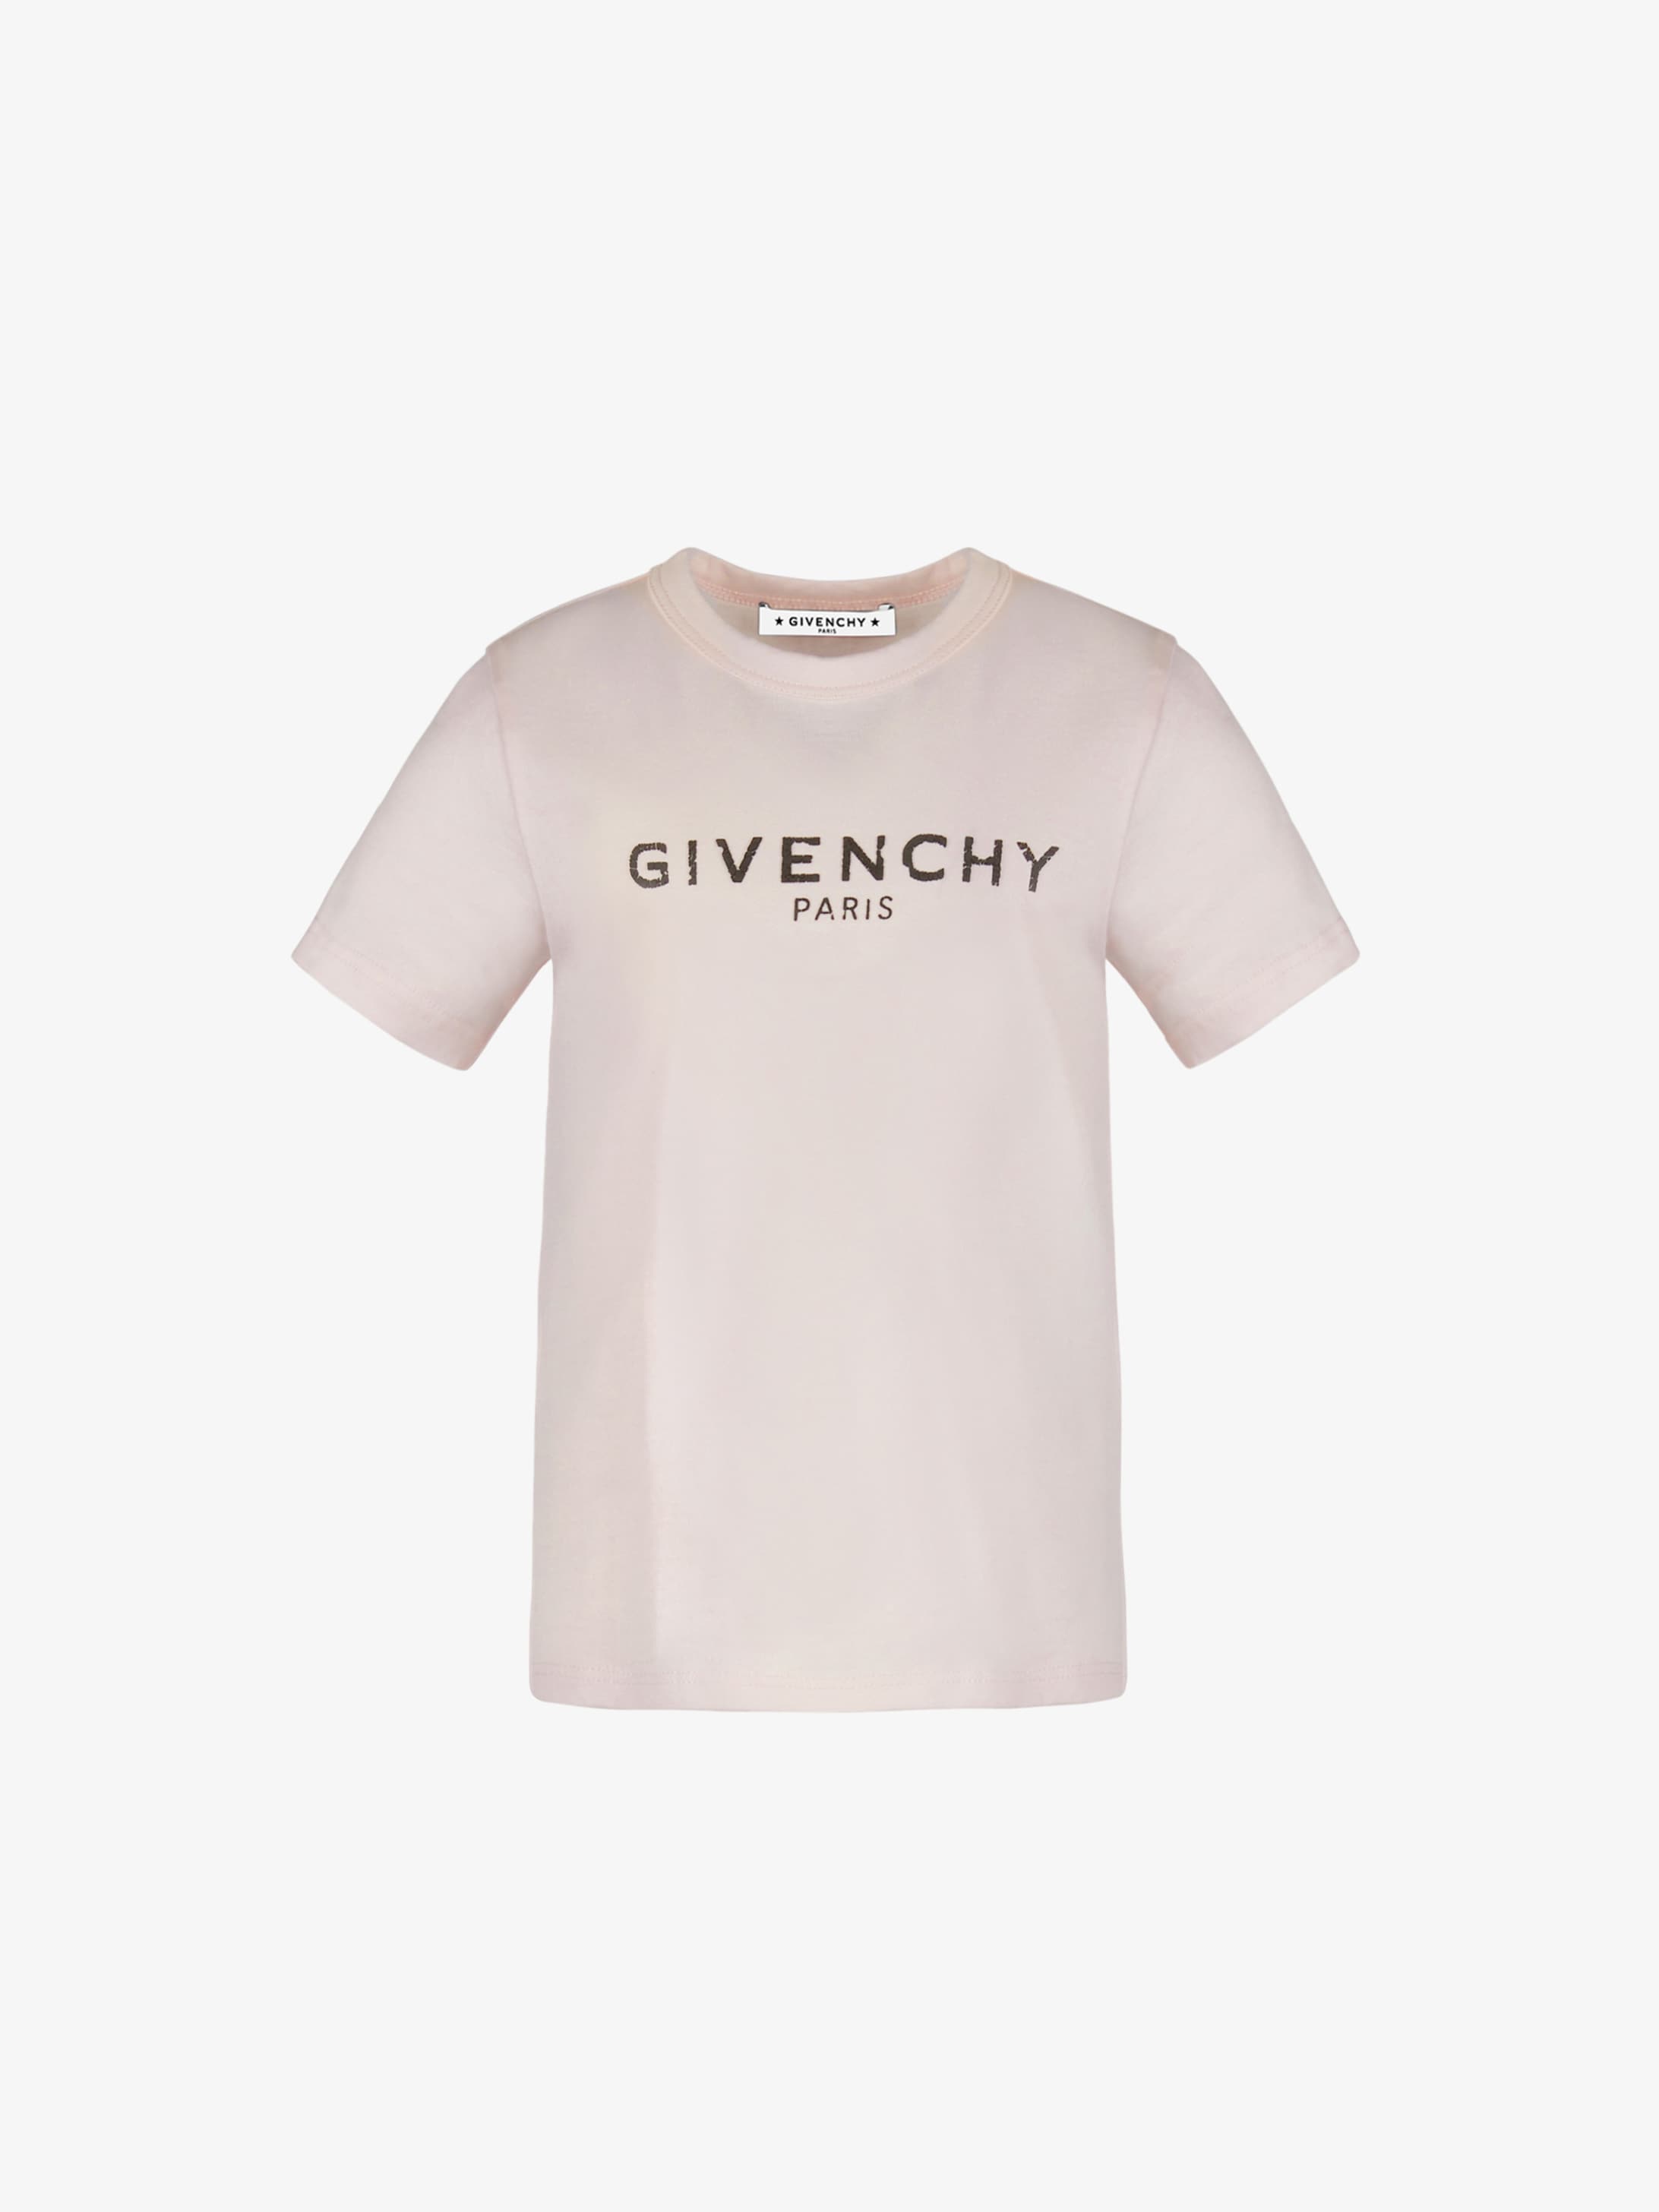 givenchy pink shirt